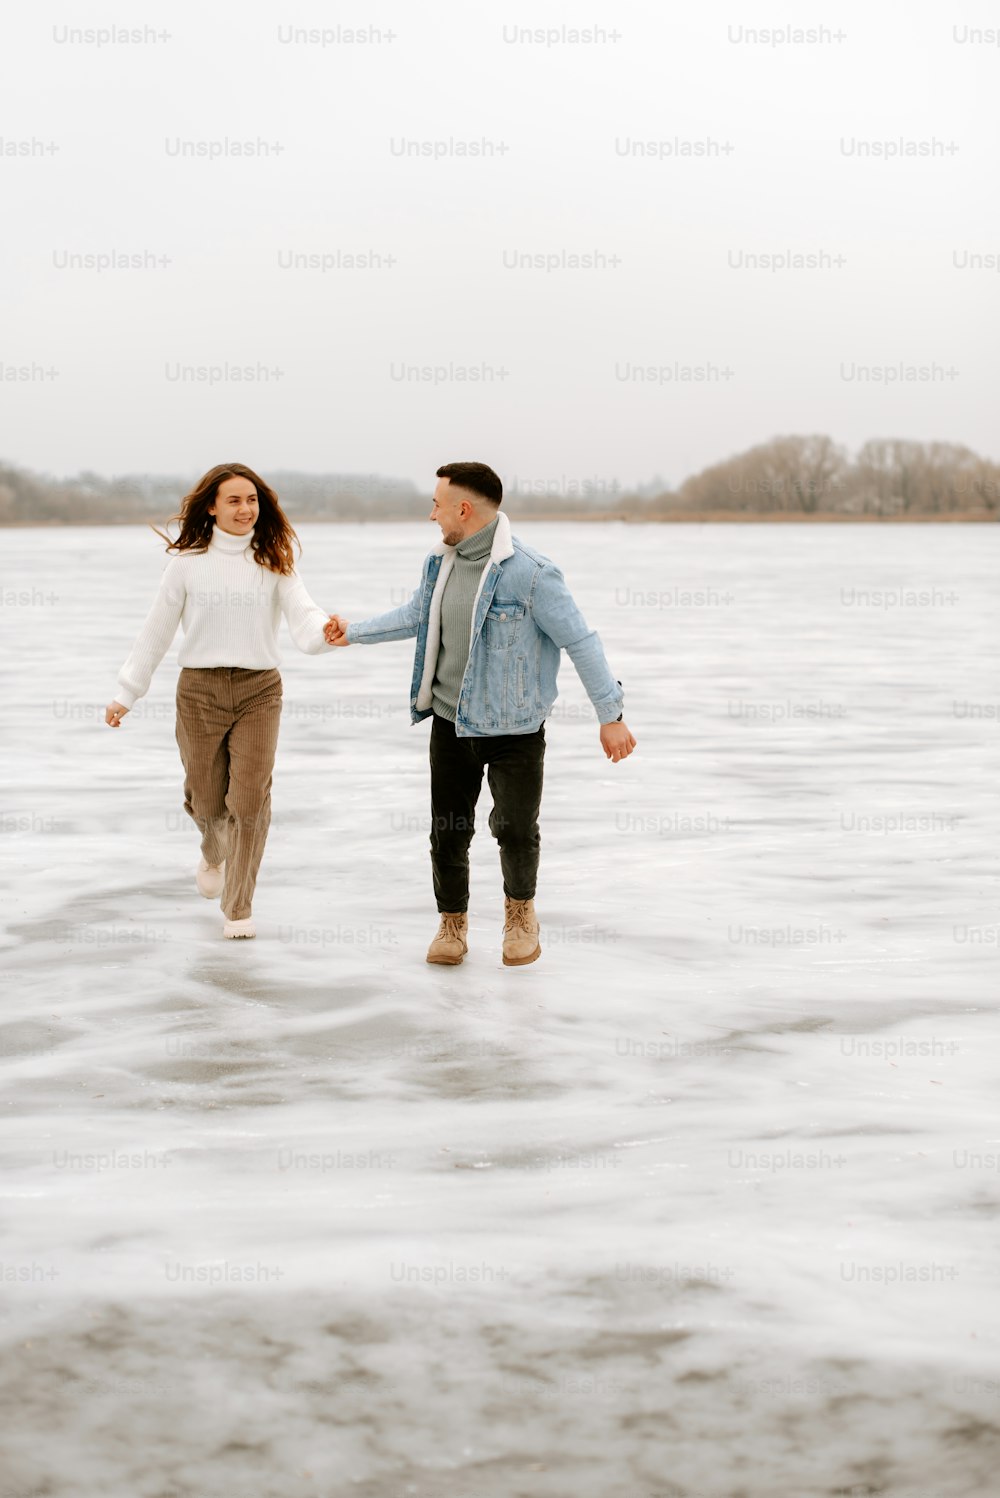 Un hombre y una mujer caminan en el agua